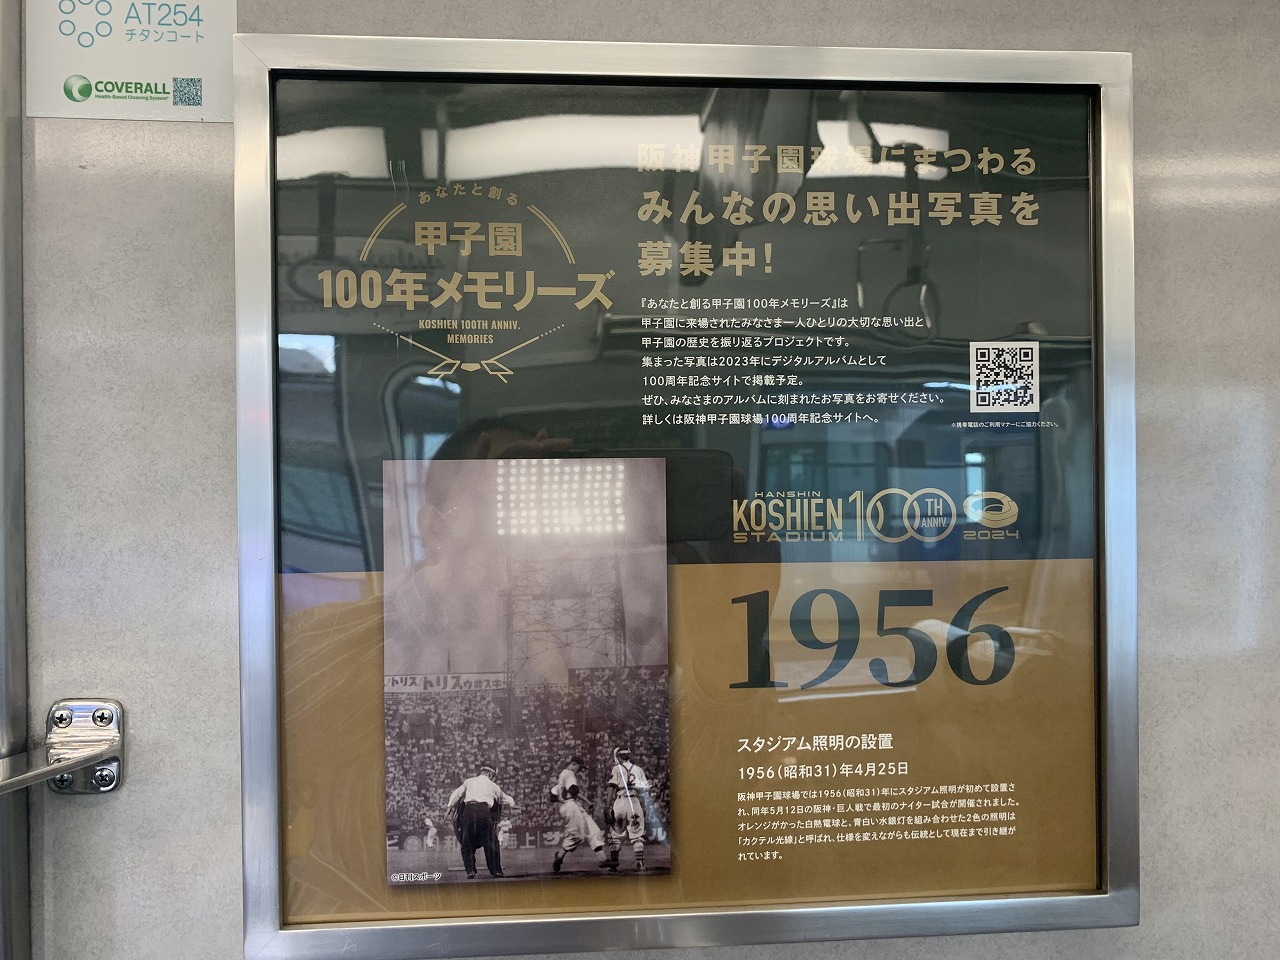 阪神甲子園球場100周年記念ラッピングトレイン